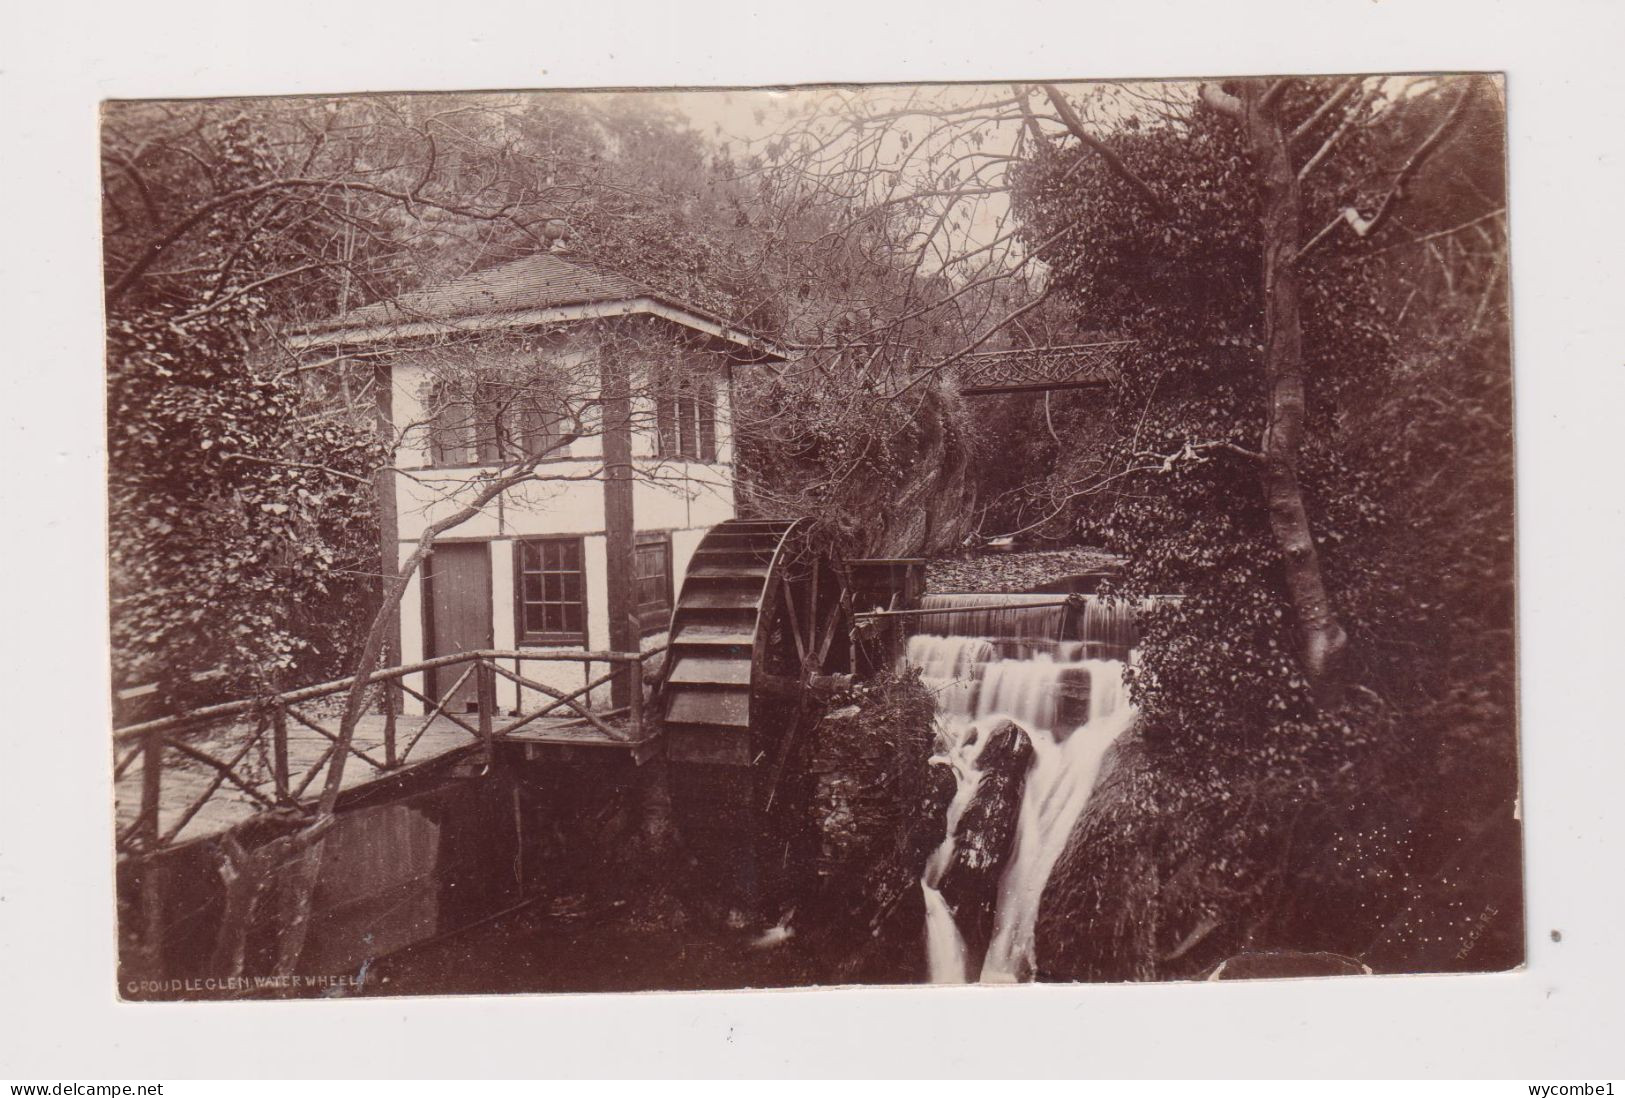 ISLE OF MAN - Groudleglen Mill Used Vintage Postcard - Isle Of Man